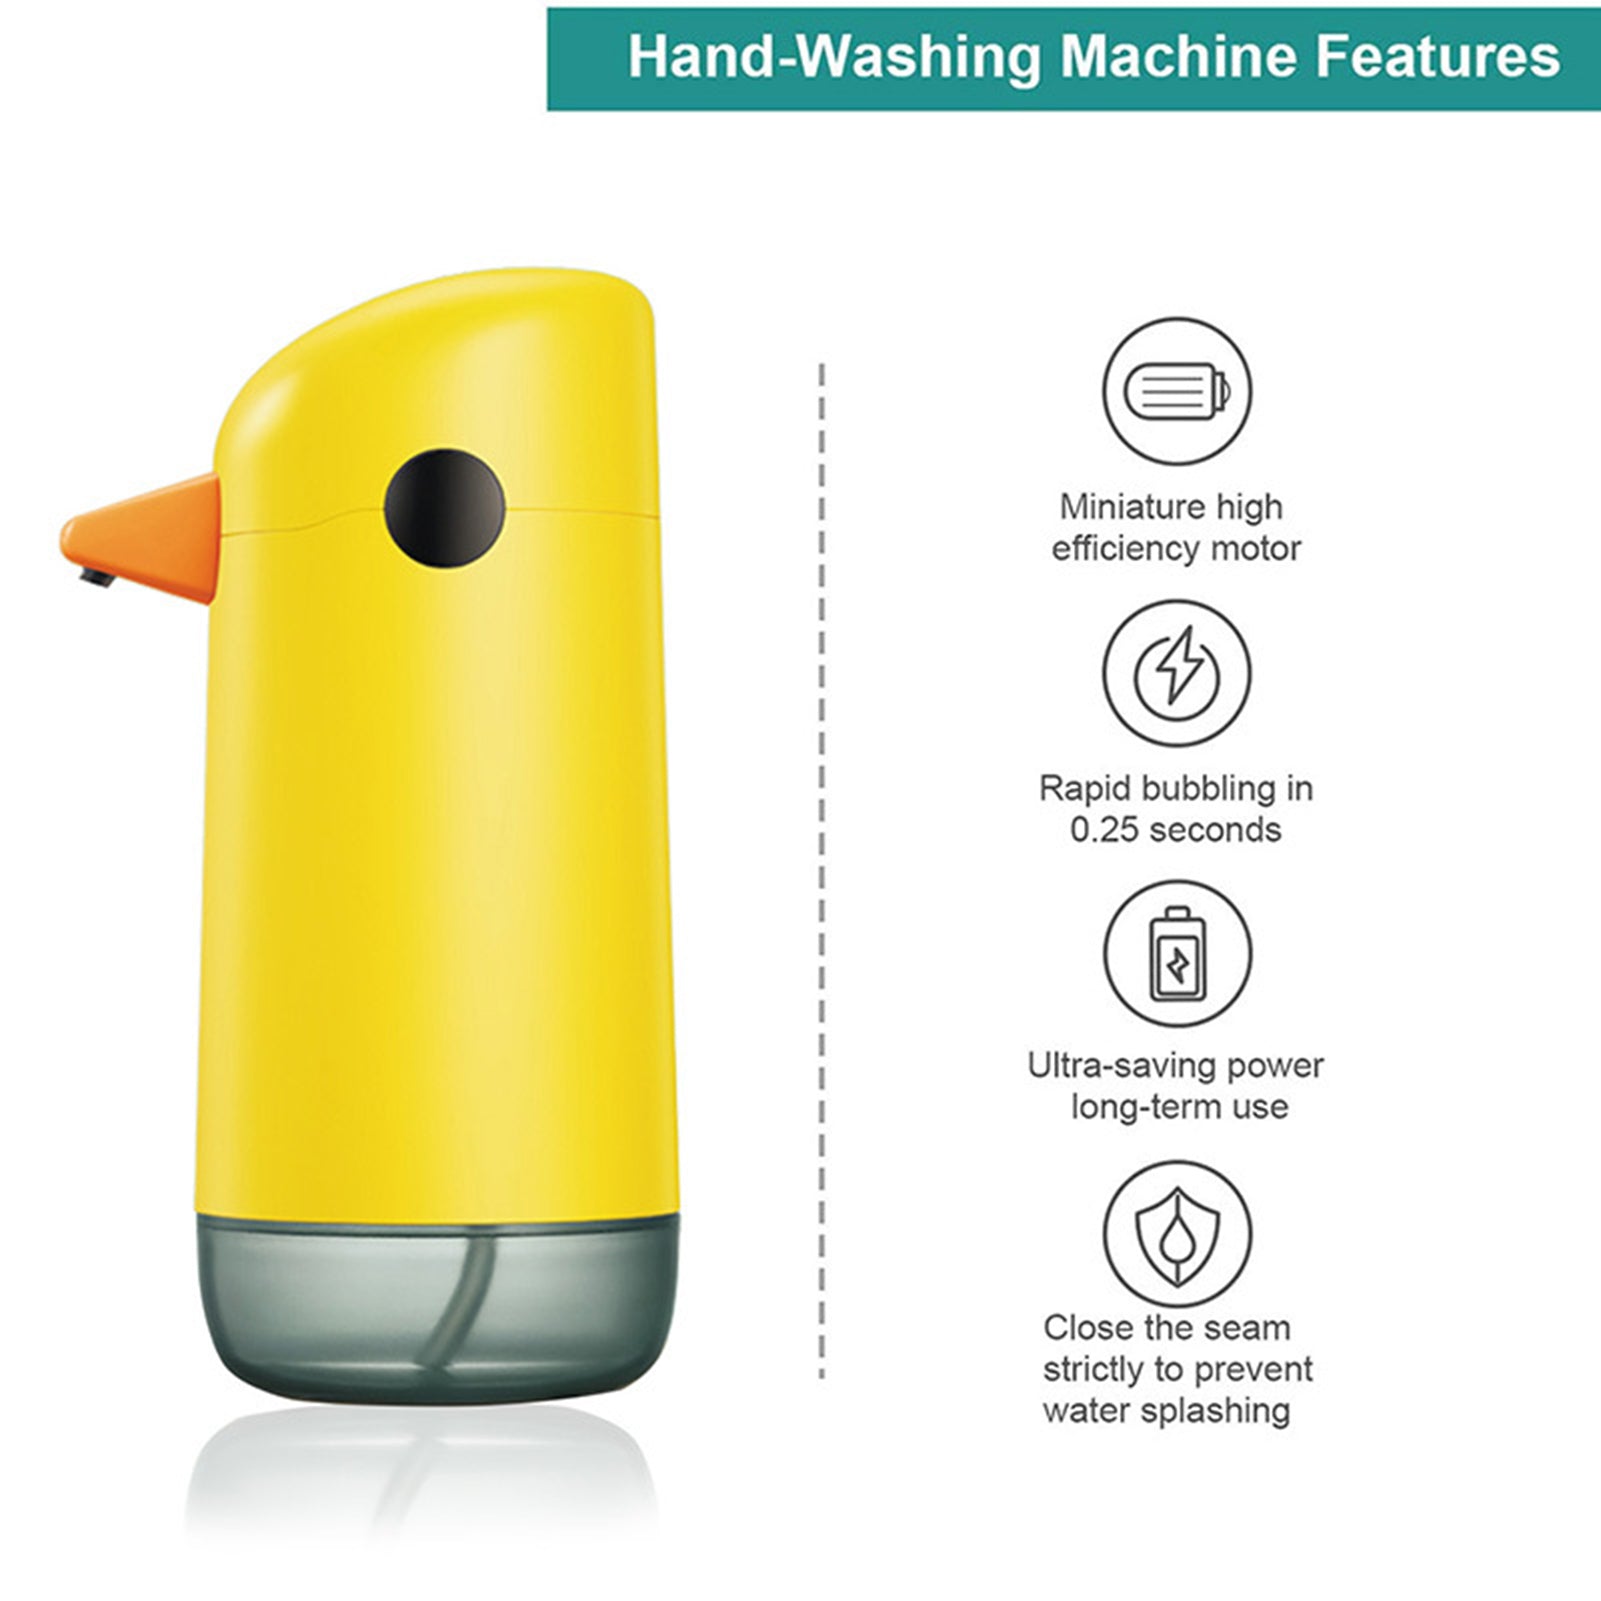 Dispensador automático de jabón líquido Yellow Duck